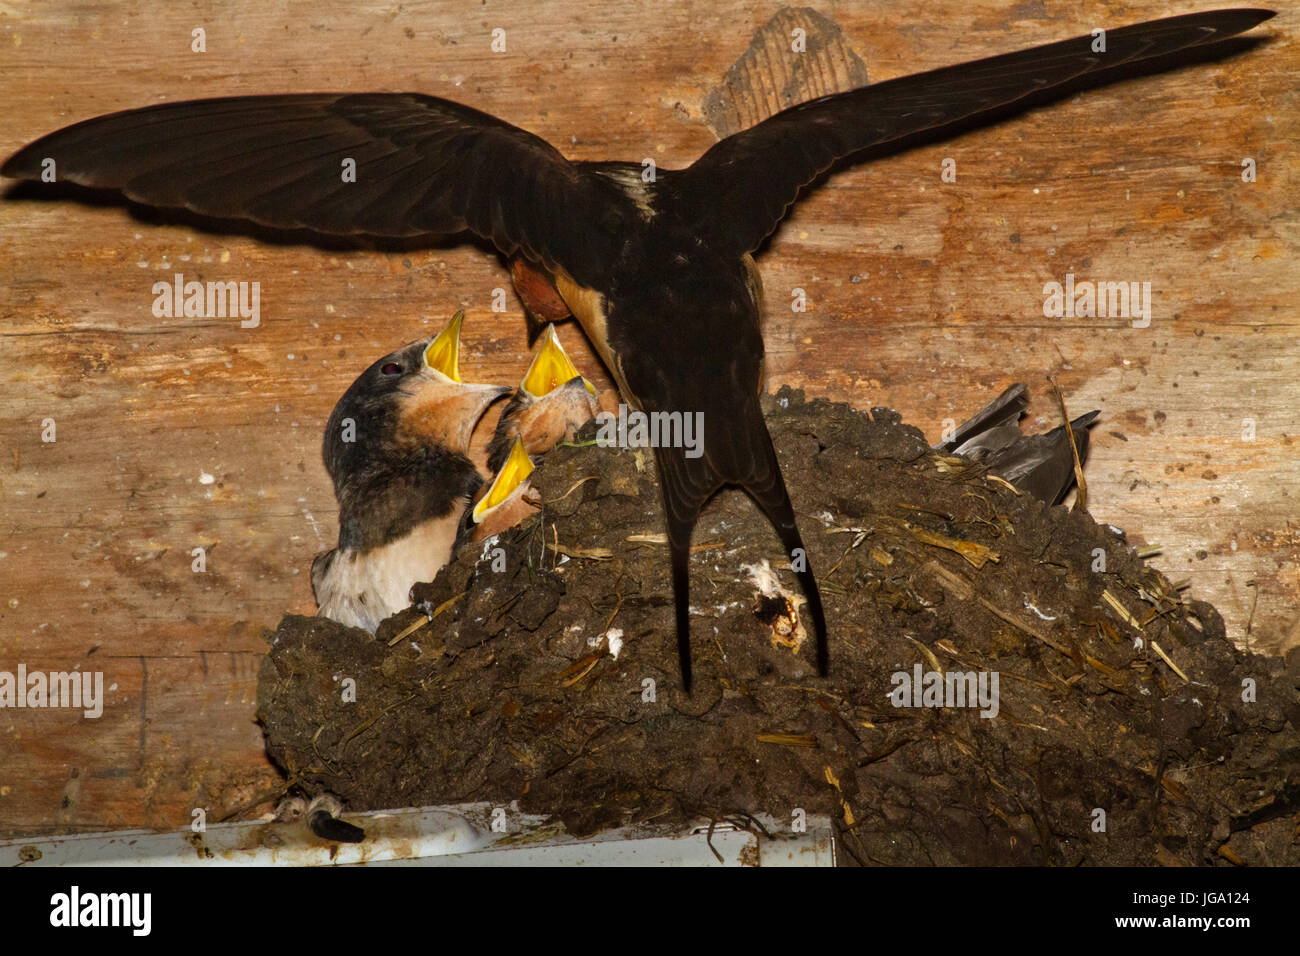 Hirondelle nourrir les jeunes dans un nid dans une grange Banque D'Images